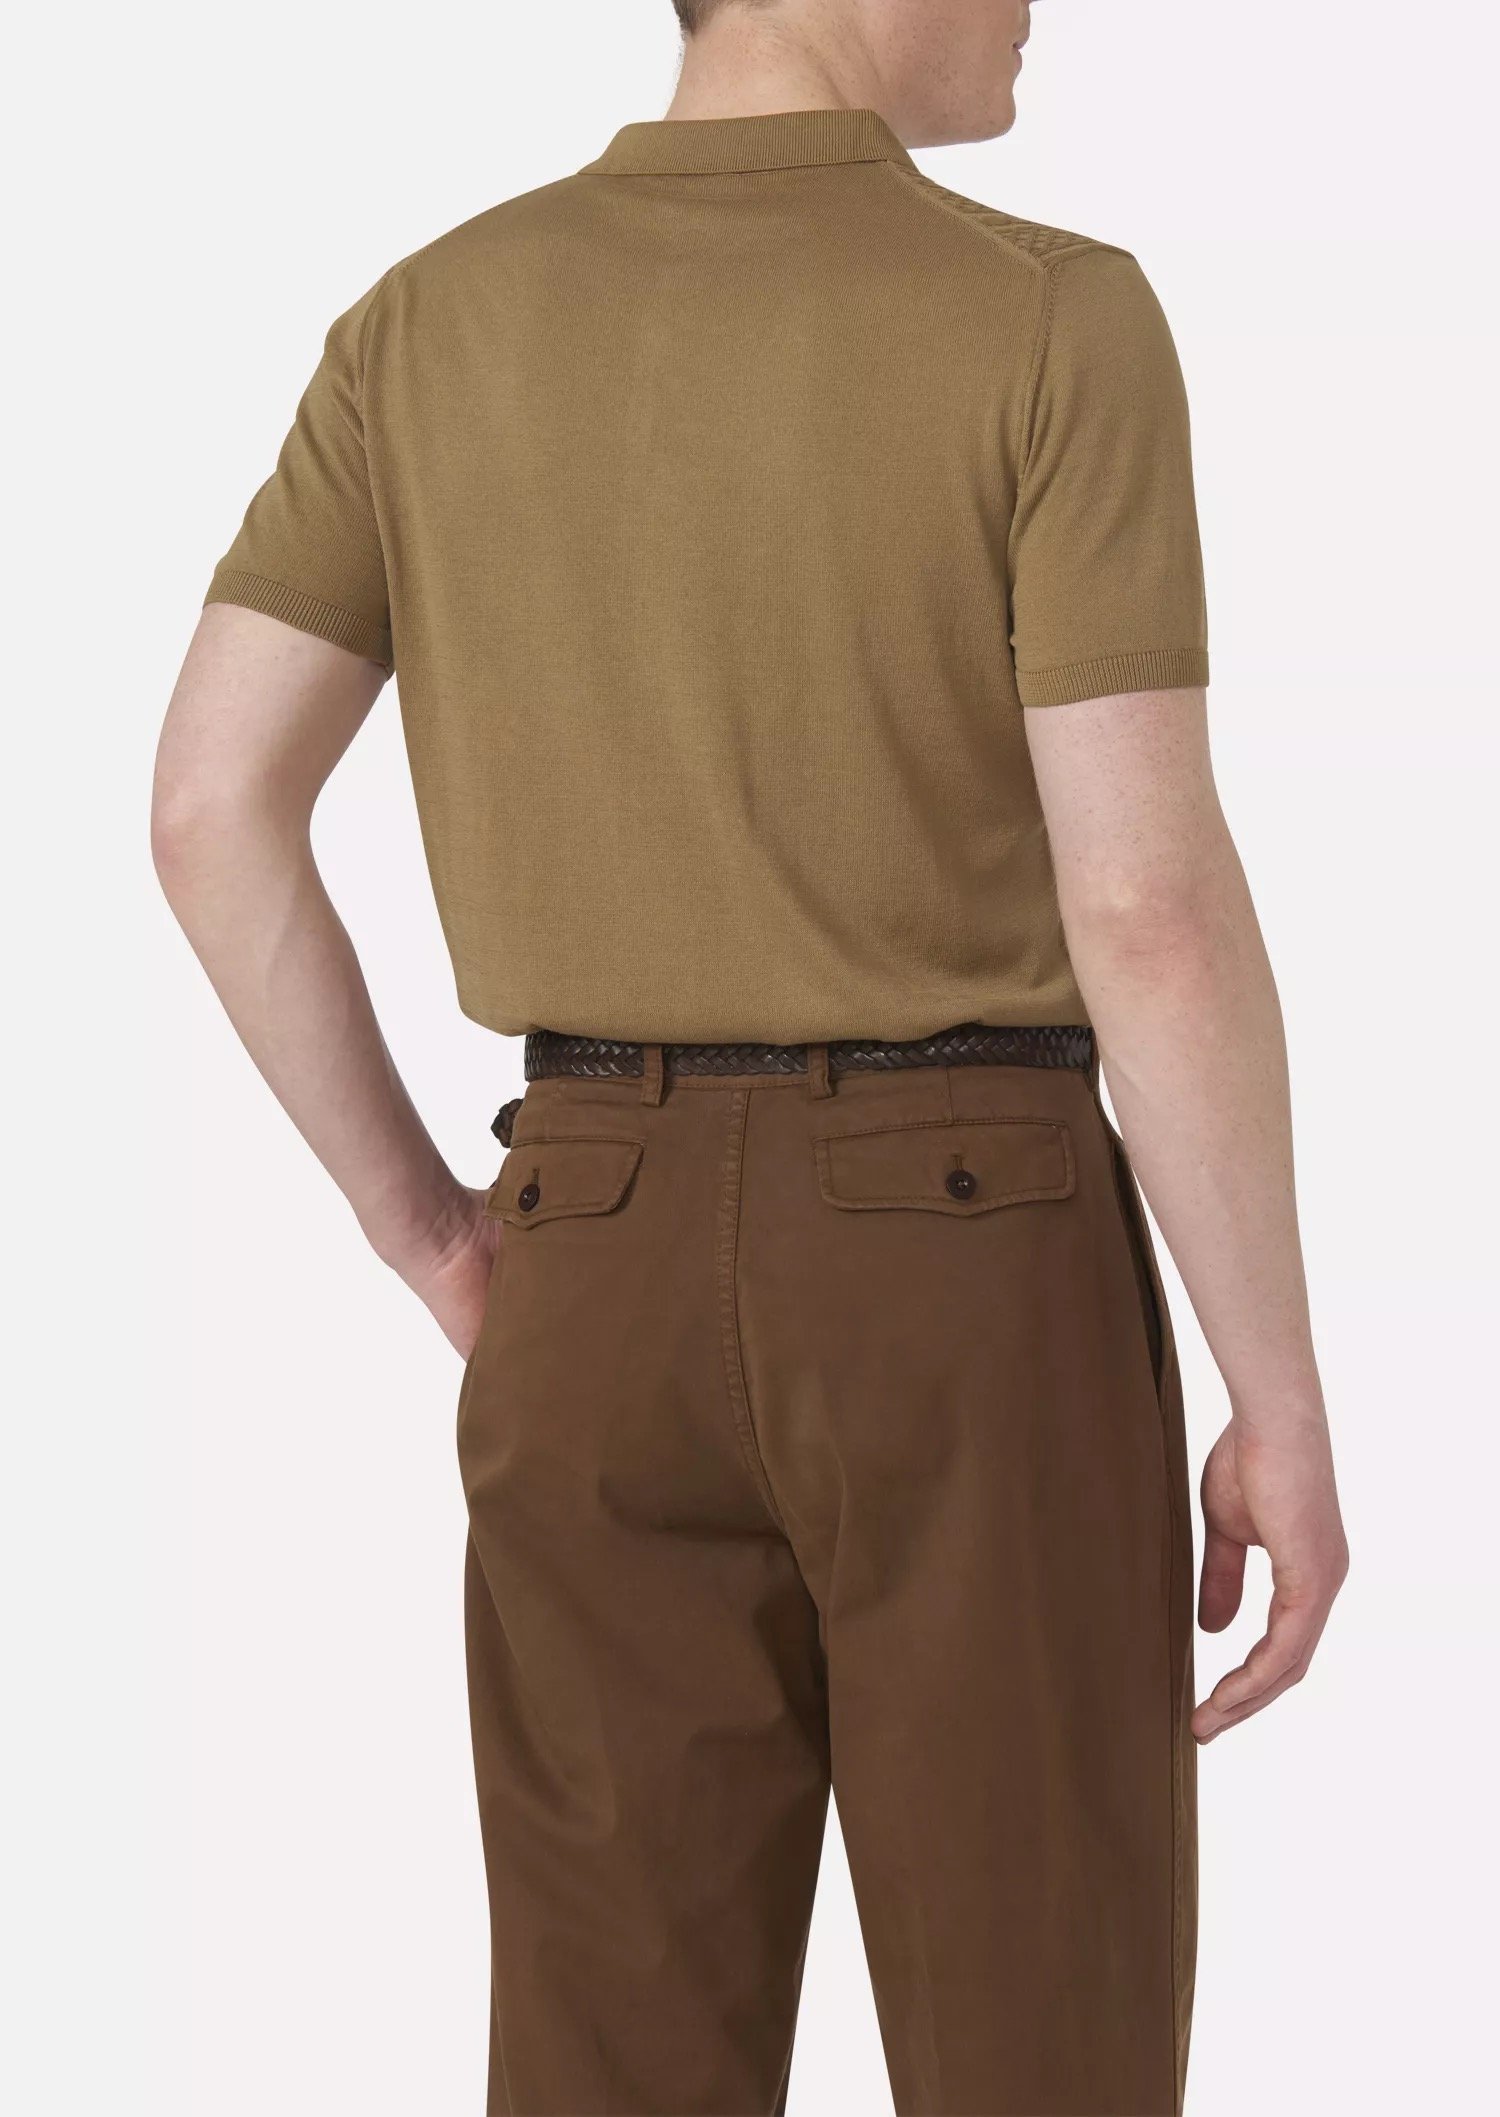 Oscar Jacobson - Bard Poloshirt (+ more colours)